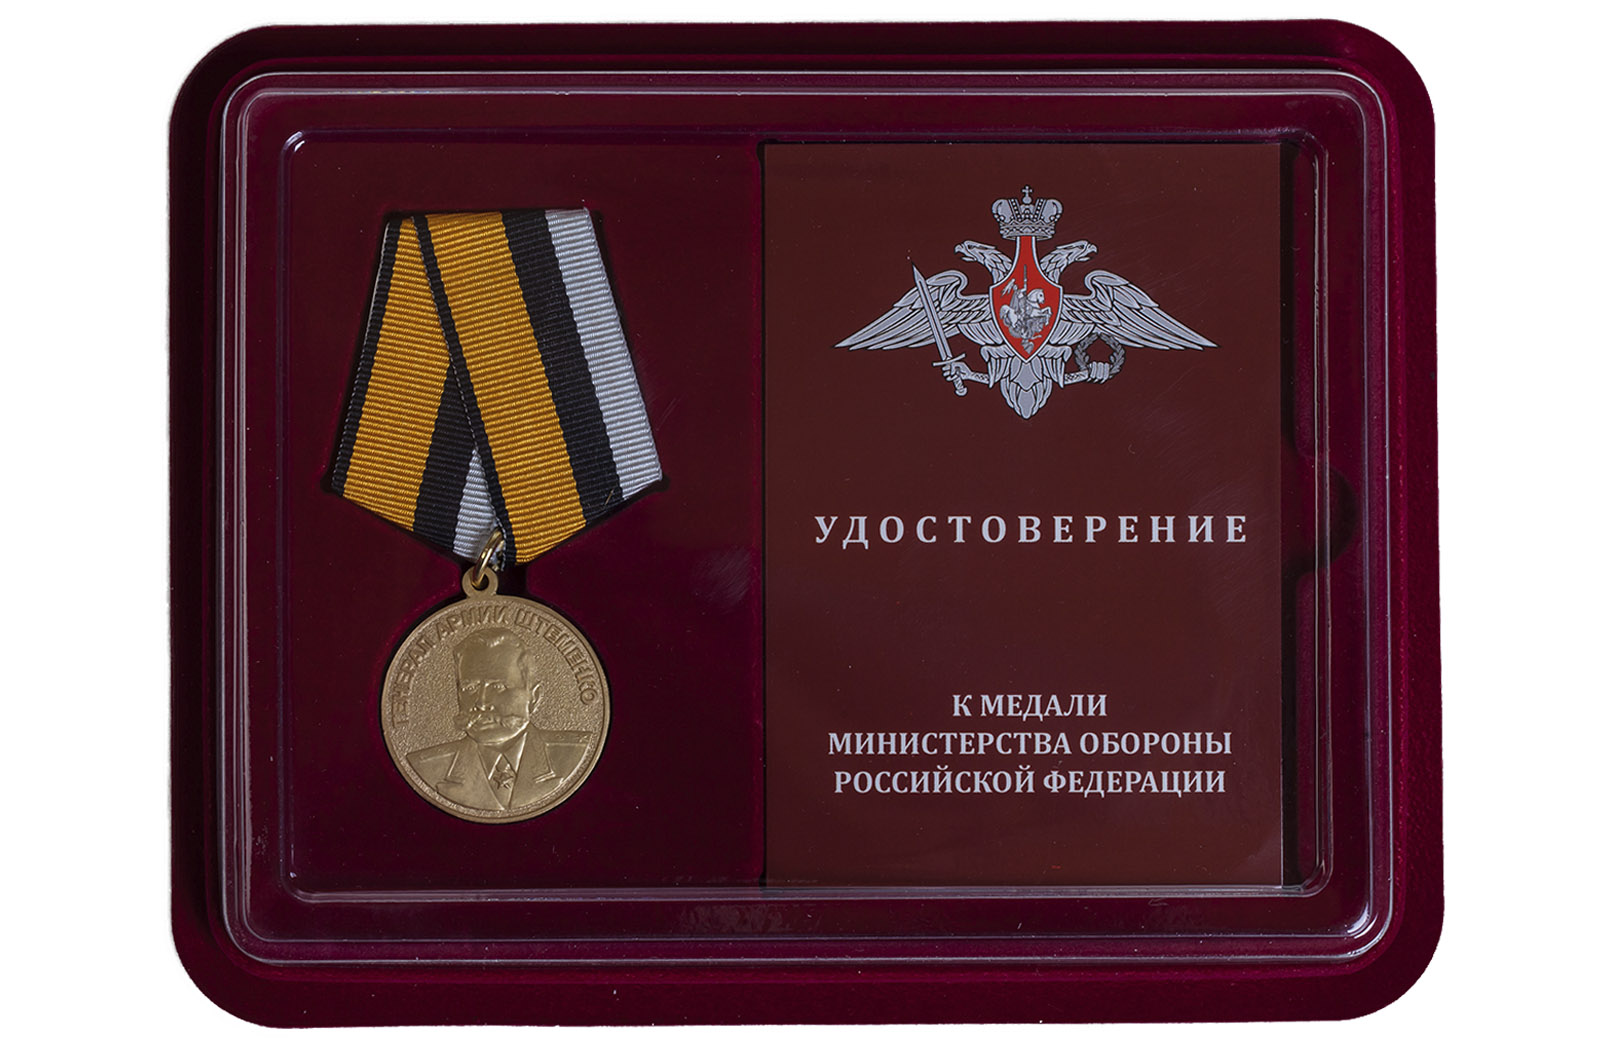 Купить медаль Генерал армии Штеменко в футляре с удостоверением в подарок